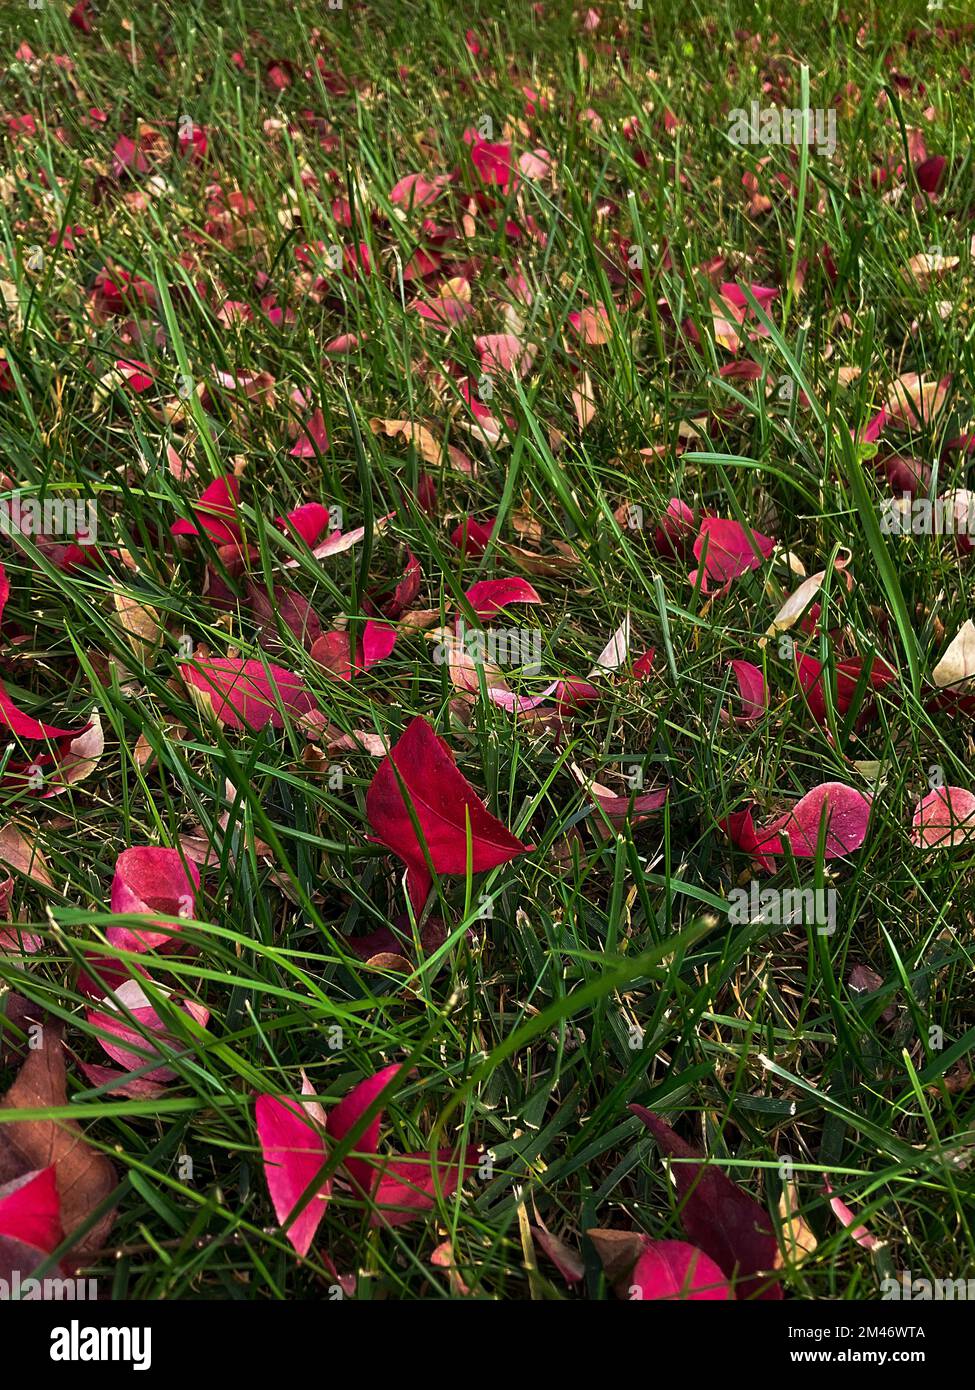 las pequeñas hojas amarillas caídas de forma ovalada se encuentran en la hierba, vista superior Foto de stock